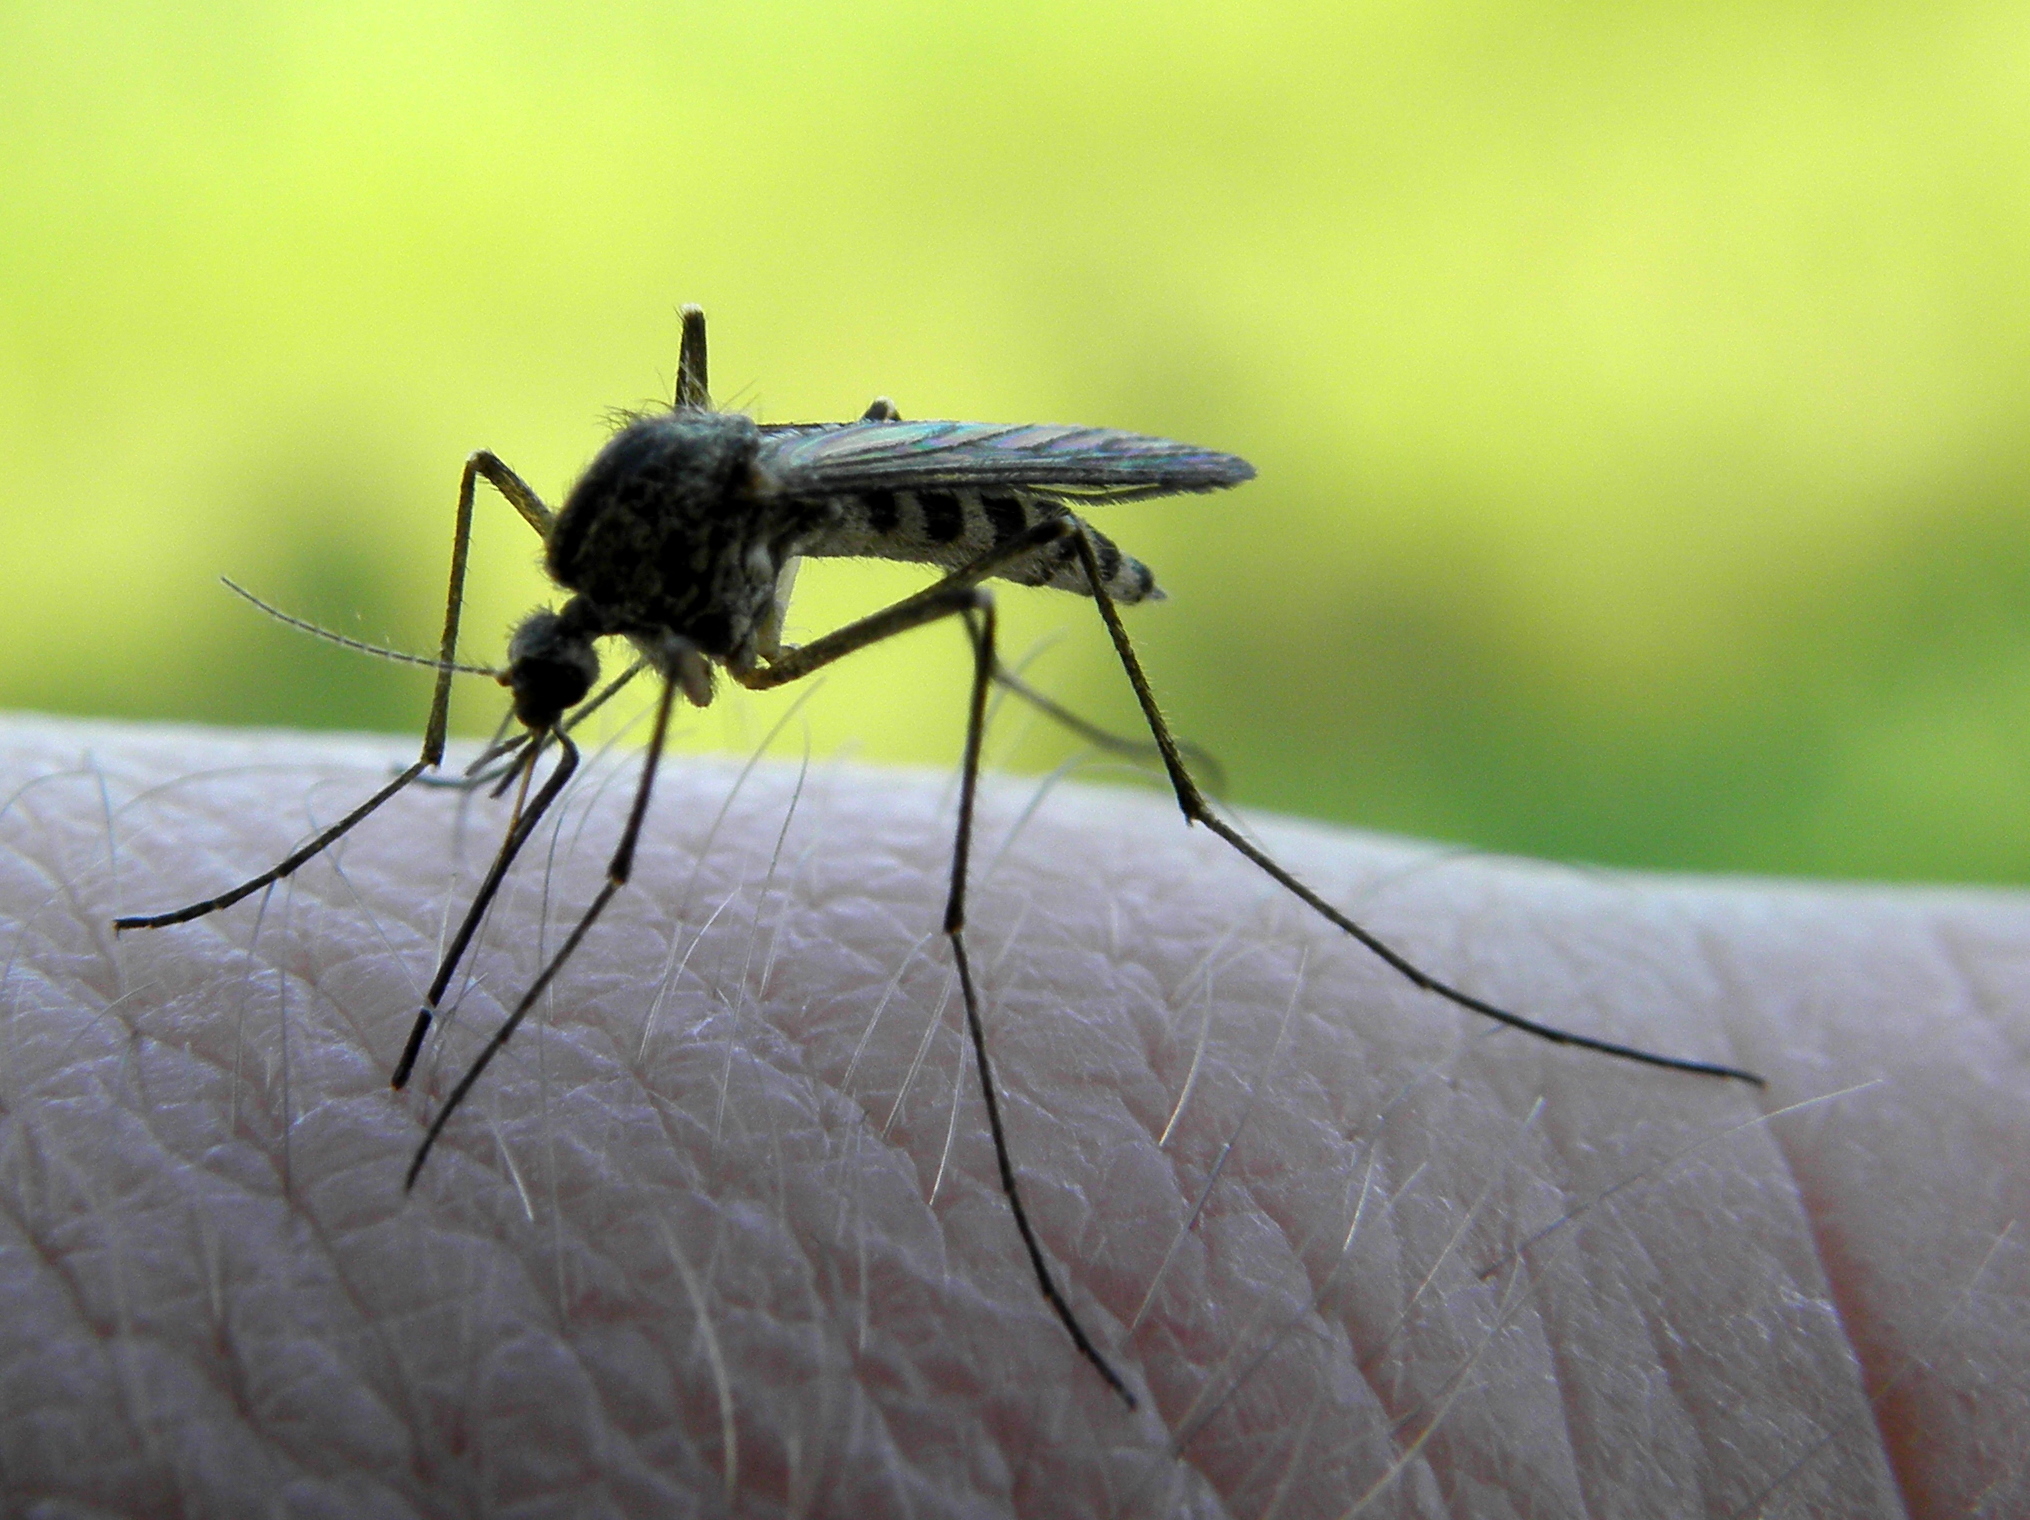 Les moustiques, qui sont des insectes, font partie des invertébrés. © Tomasz Jagliski, Flickr, cc by nc sa 3.0